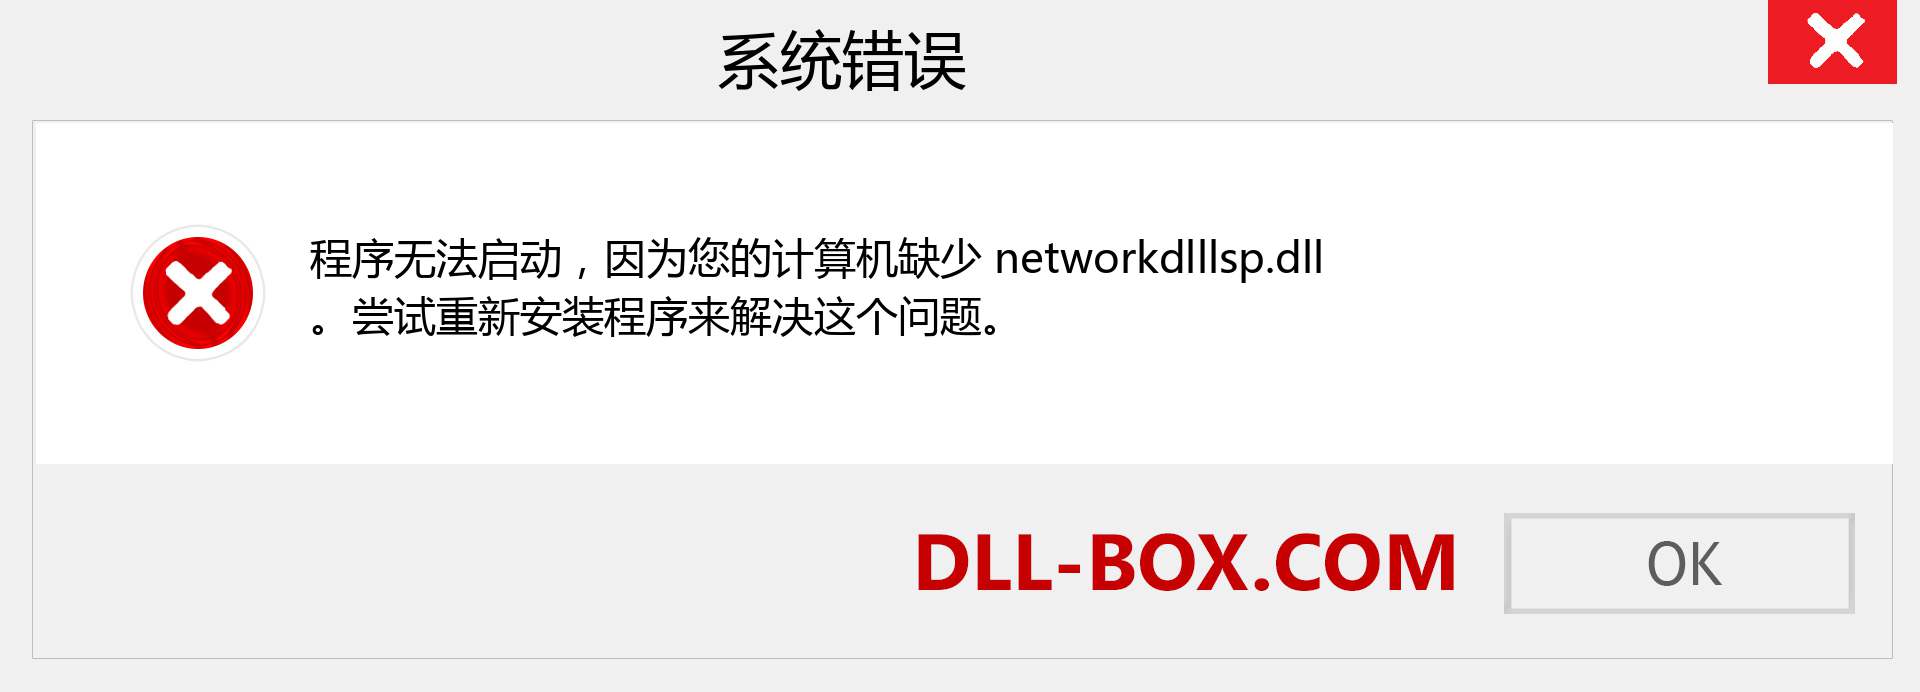 networkdlllsp.dll 文件丢失？。 适用于 Windows 7、8、10 的下载 - 修复 Windows、照片、图像上的 networkdlllsp dll 丢失错误